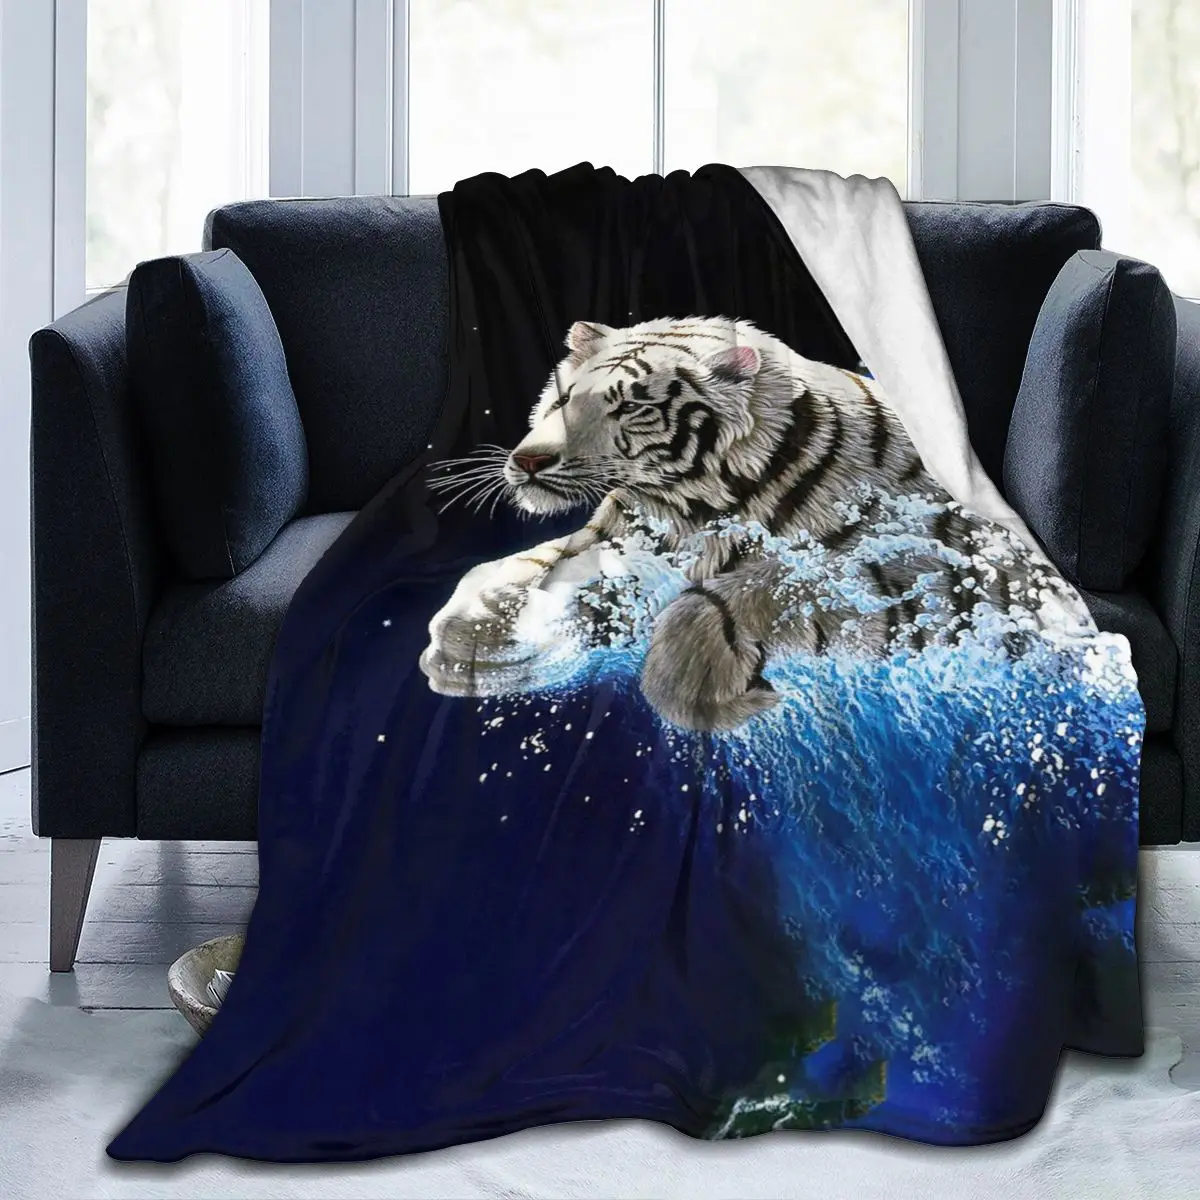 

Одеяло с 3D принтом животных, покрывало в стиле ретро, постельное белье, квадратное шерстяное мягкое одеяло для пикника с тигром